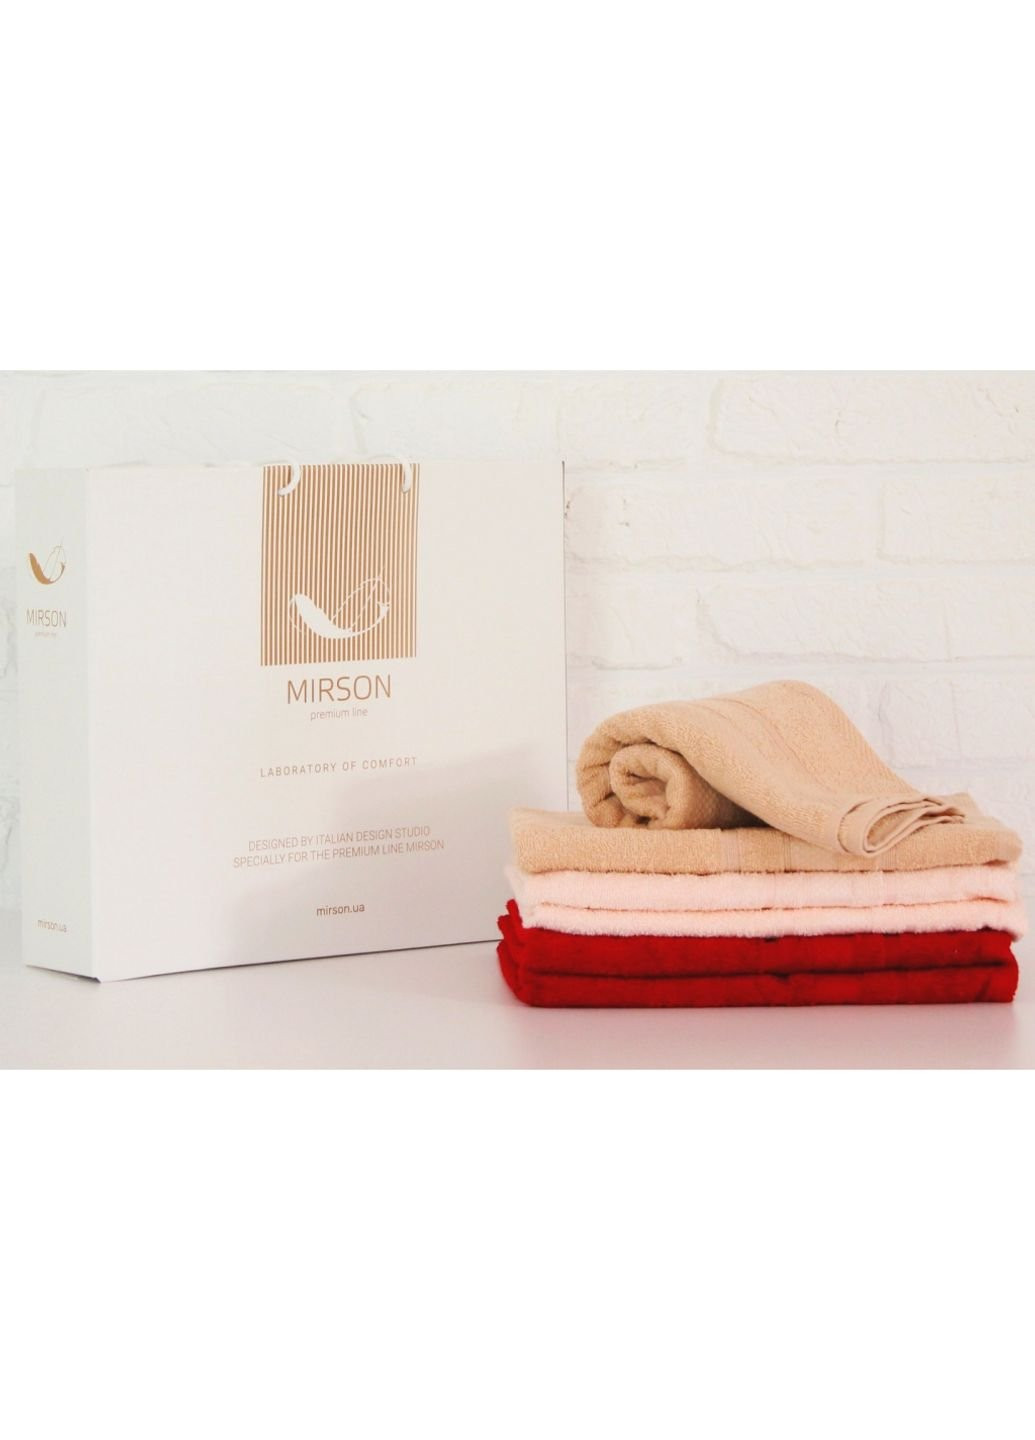 Mirson полотенце набор банных №5099 elite softnes marvelous 50х90 6 шт (2200003525465) комбинированный производство - Украина